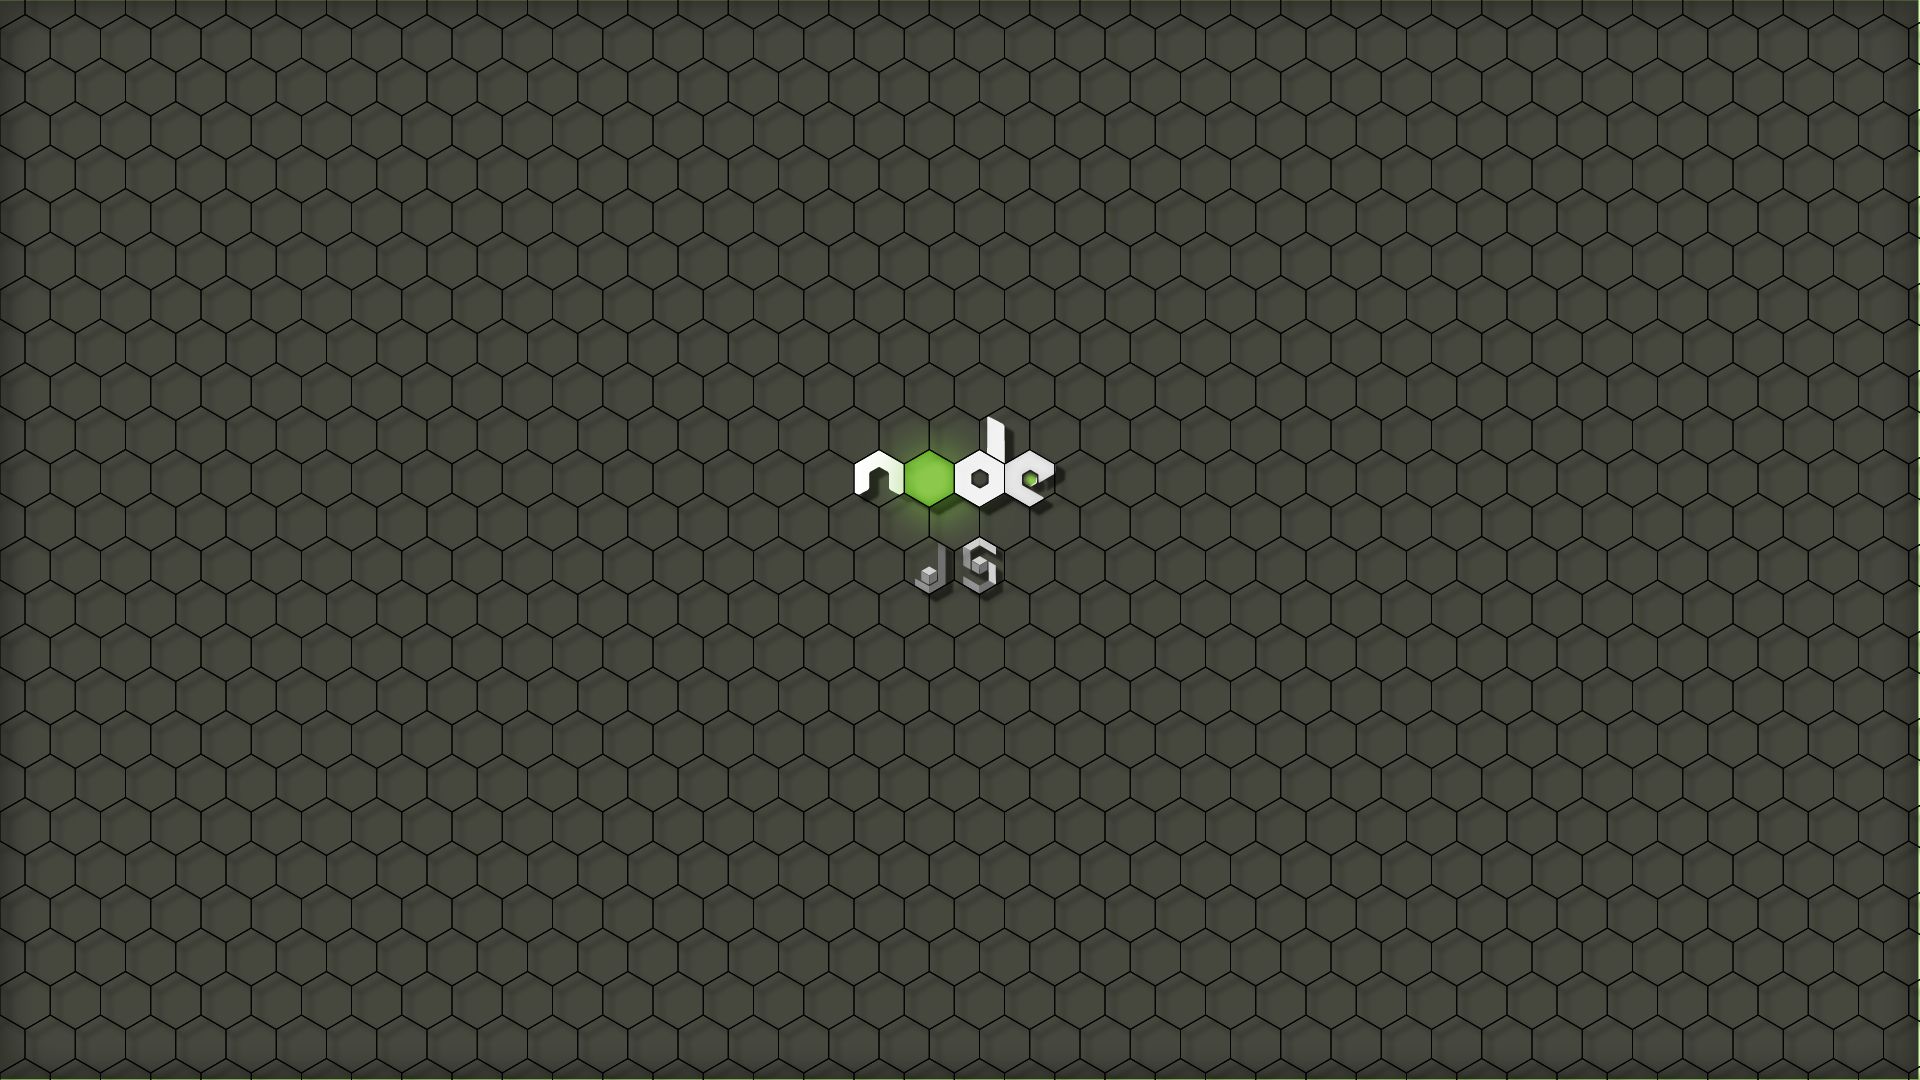 Node.js Wallpaper